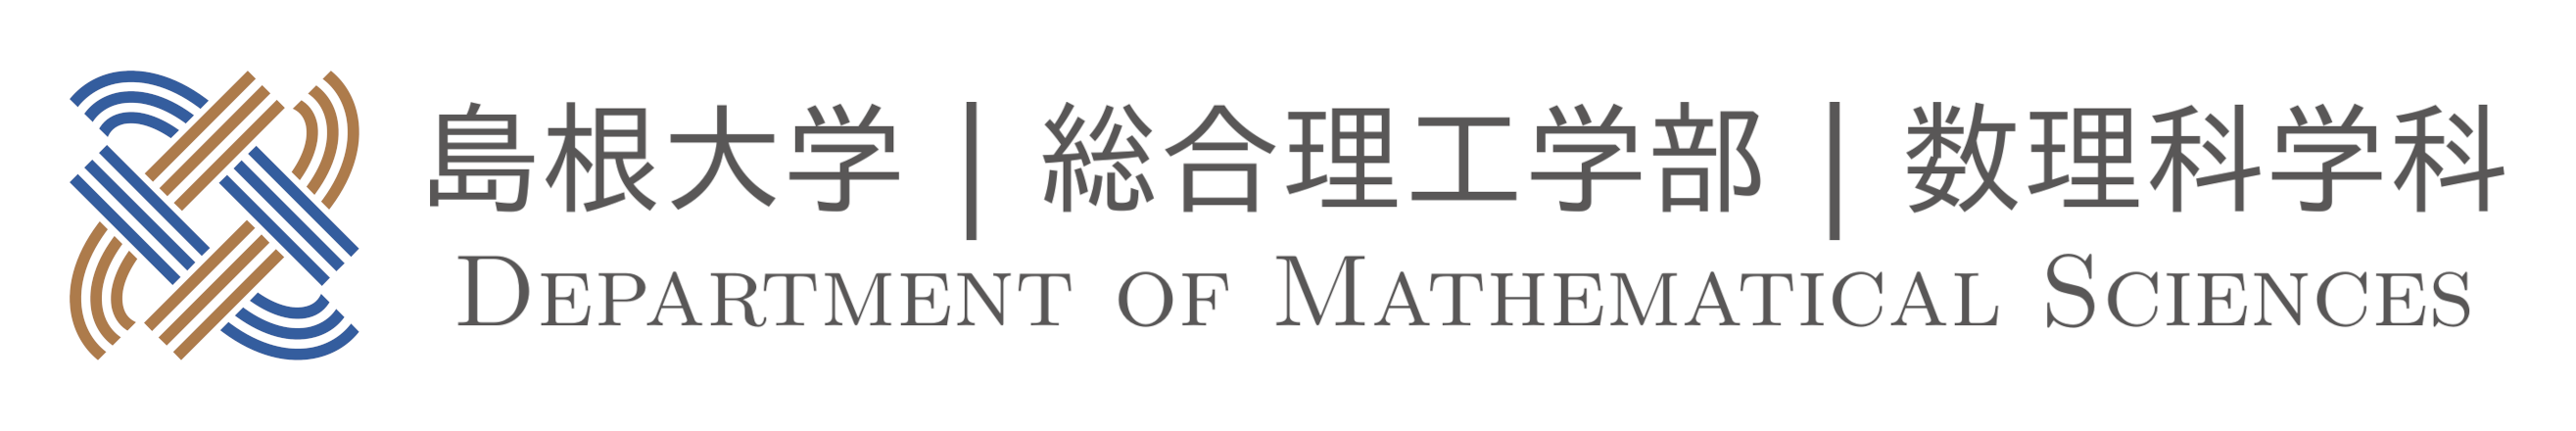 department_logo